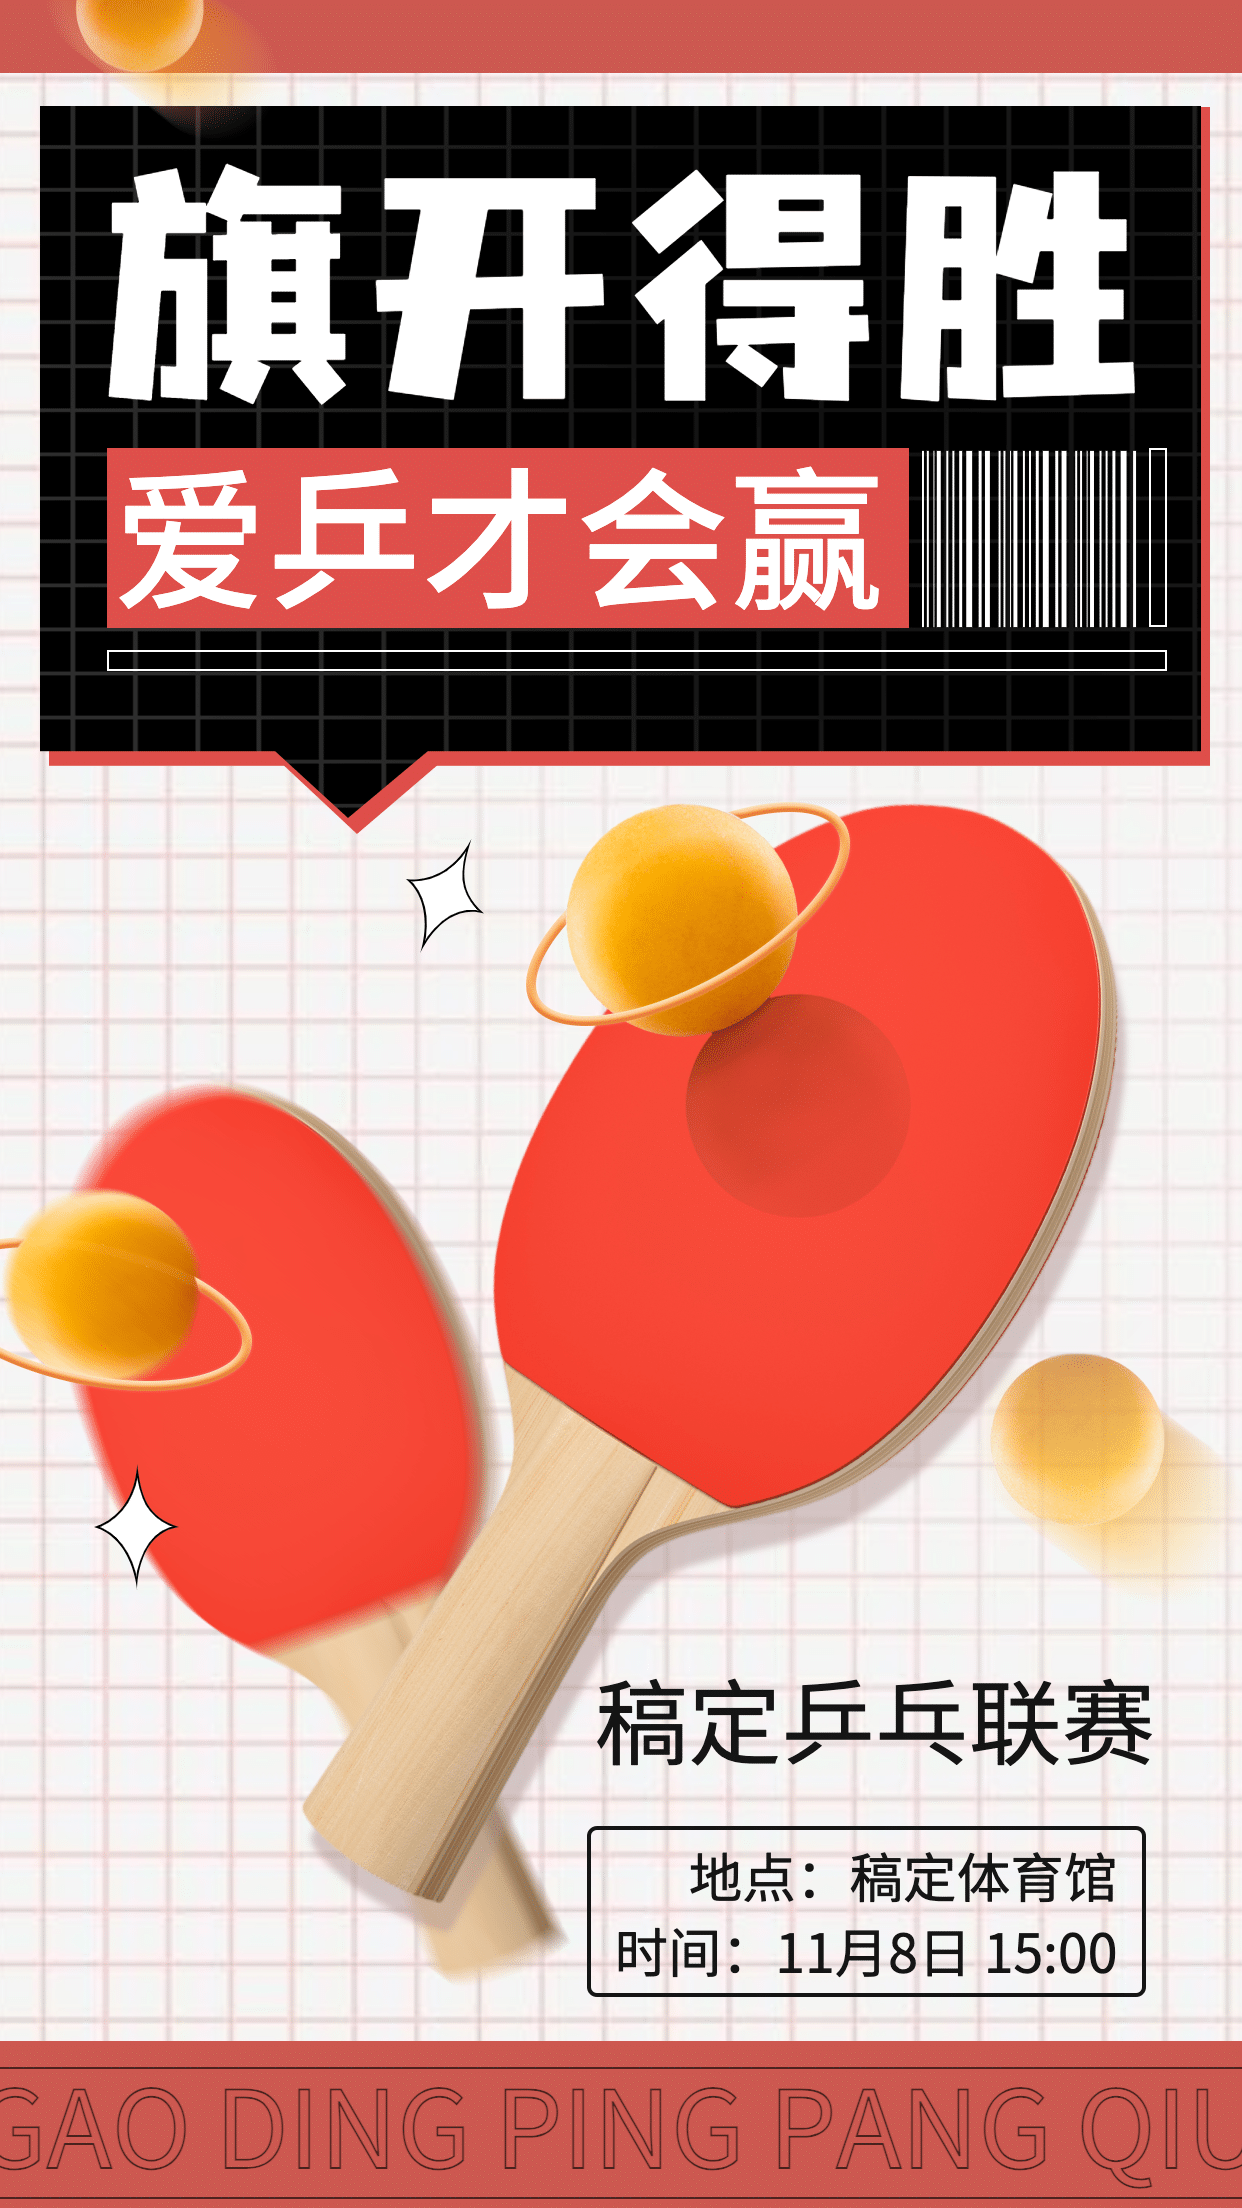 乒乓球运动赛事宣传海报预览效果